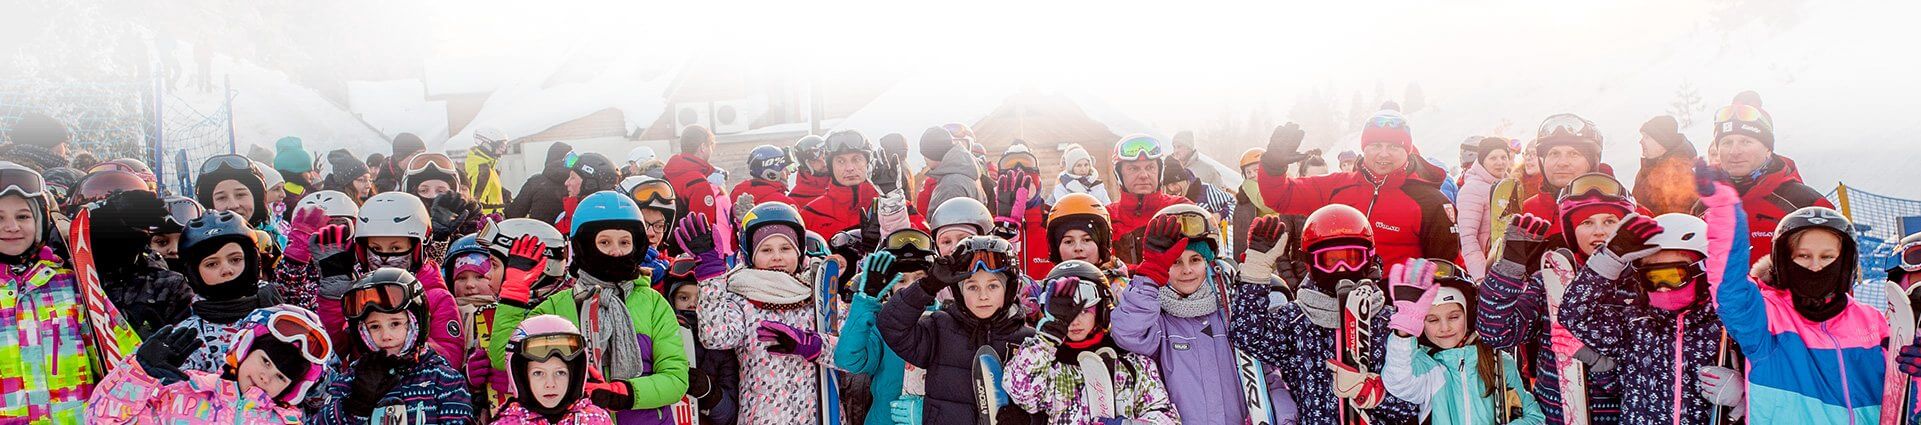 duża grupa dzieci ubrani w odzież narciarską